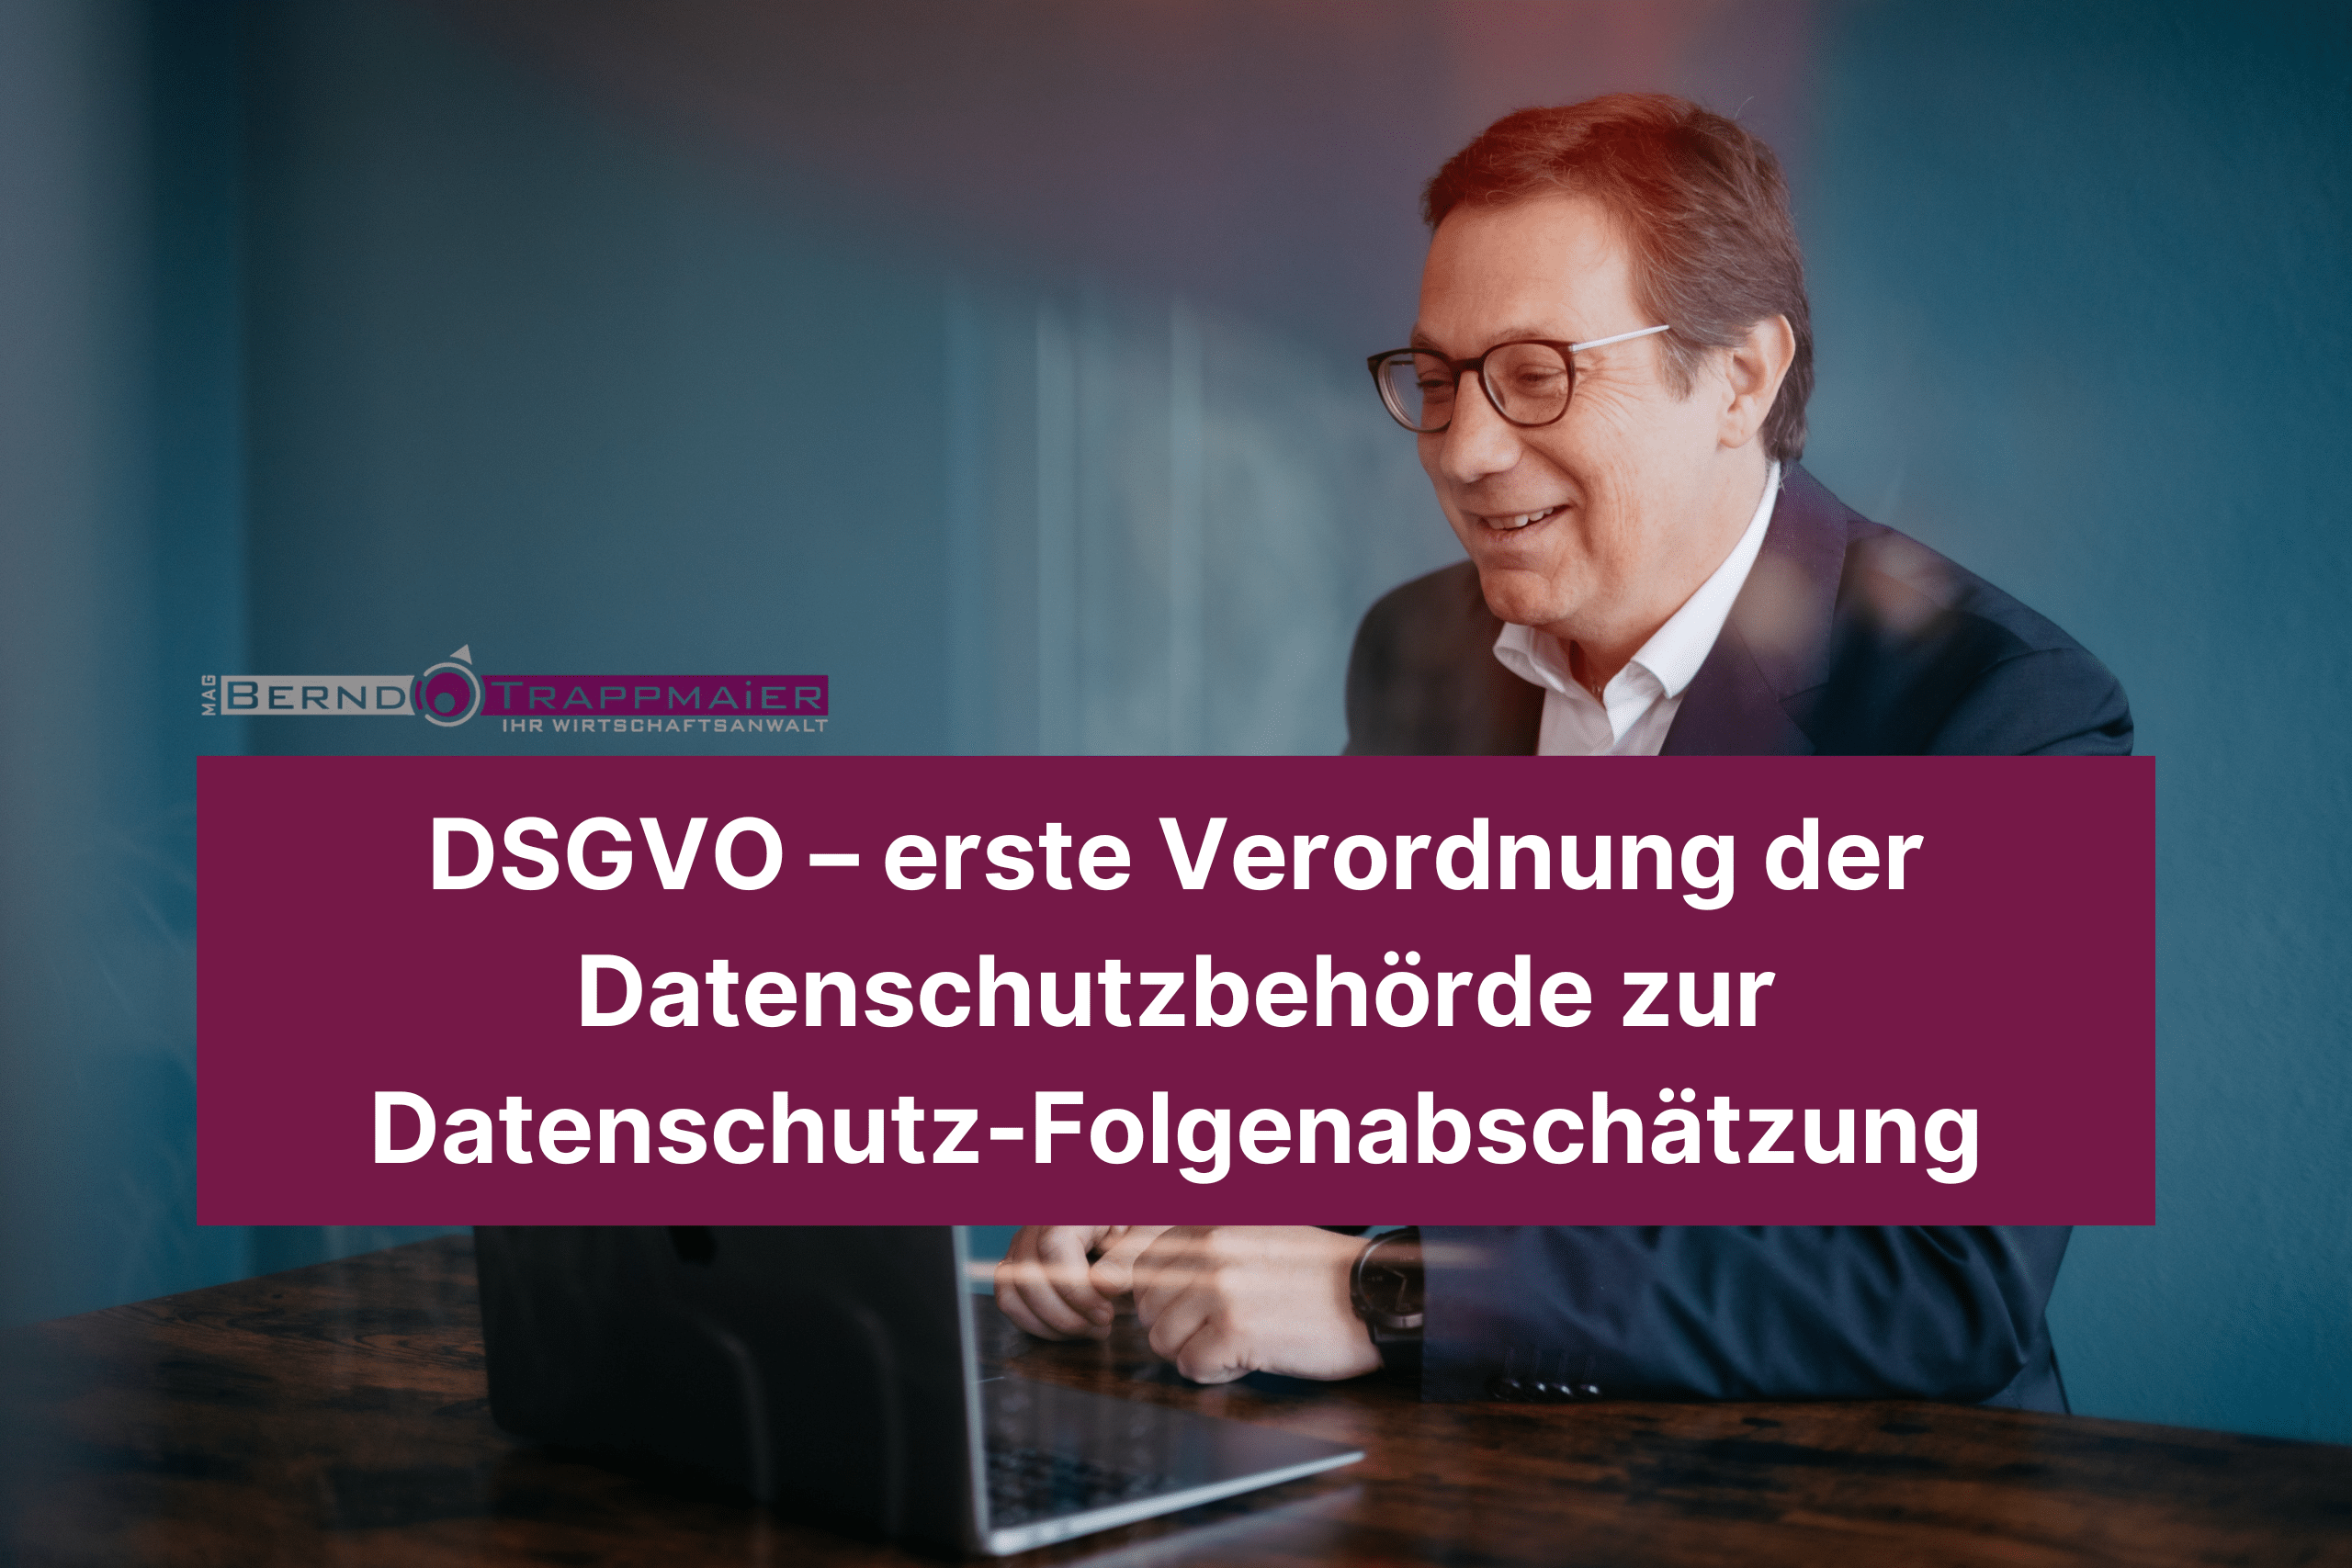 DSGVO – erste Verordnung der Datenschutzbehörde zur Datenschutz-Folgenabschätzung